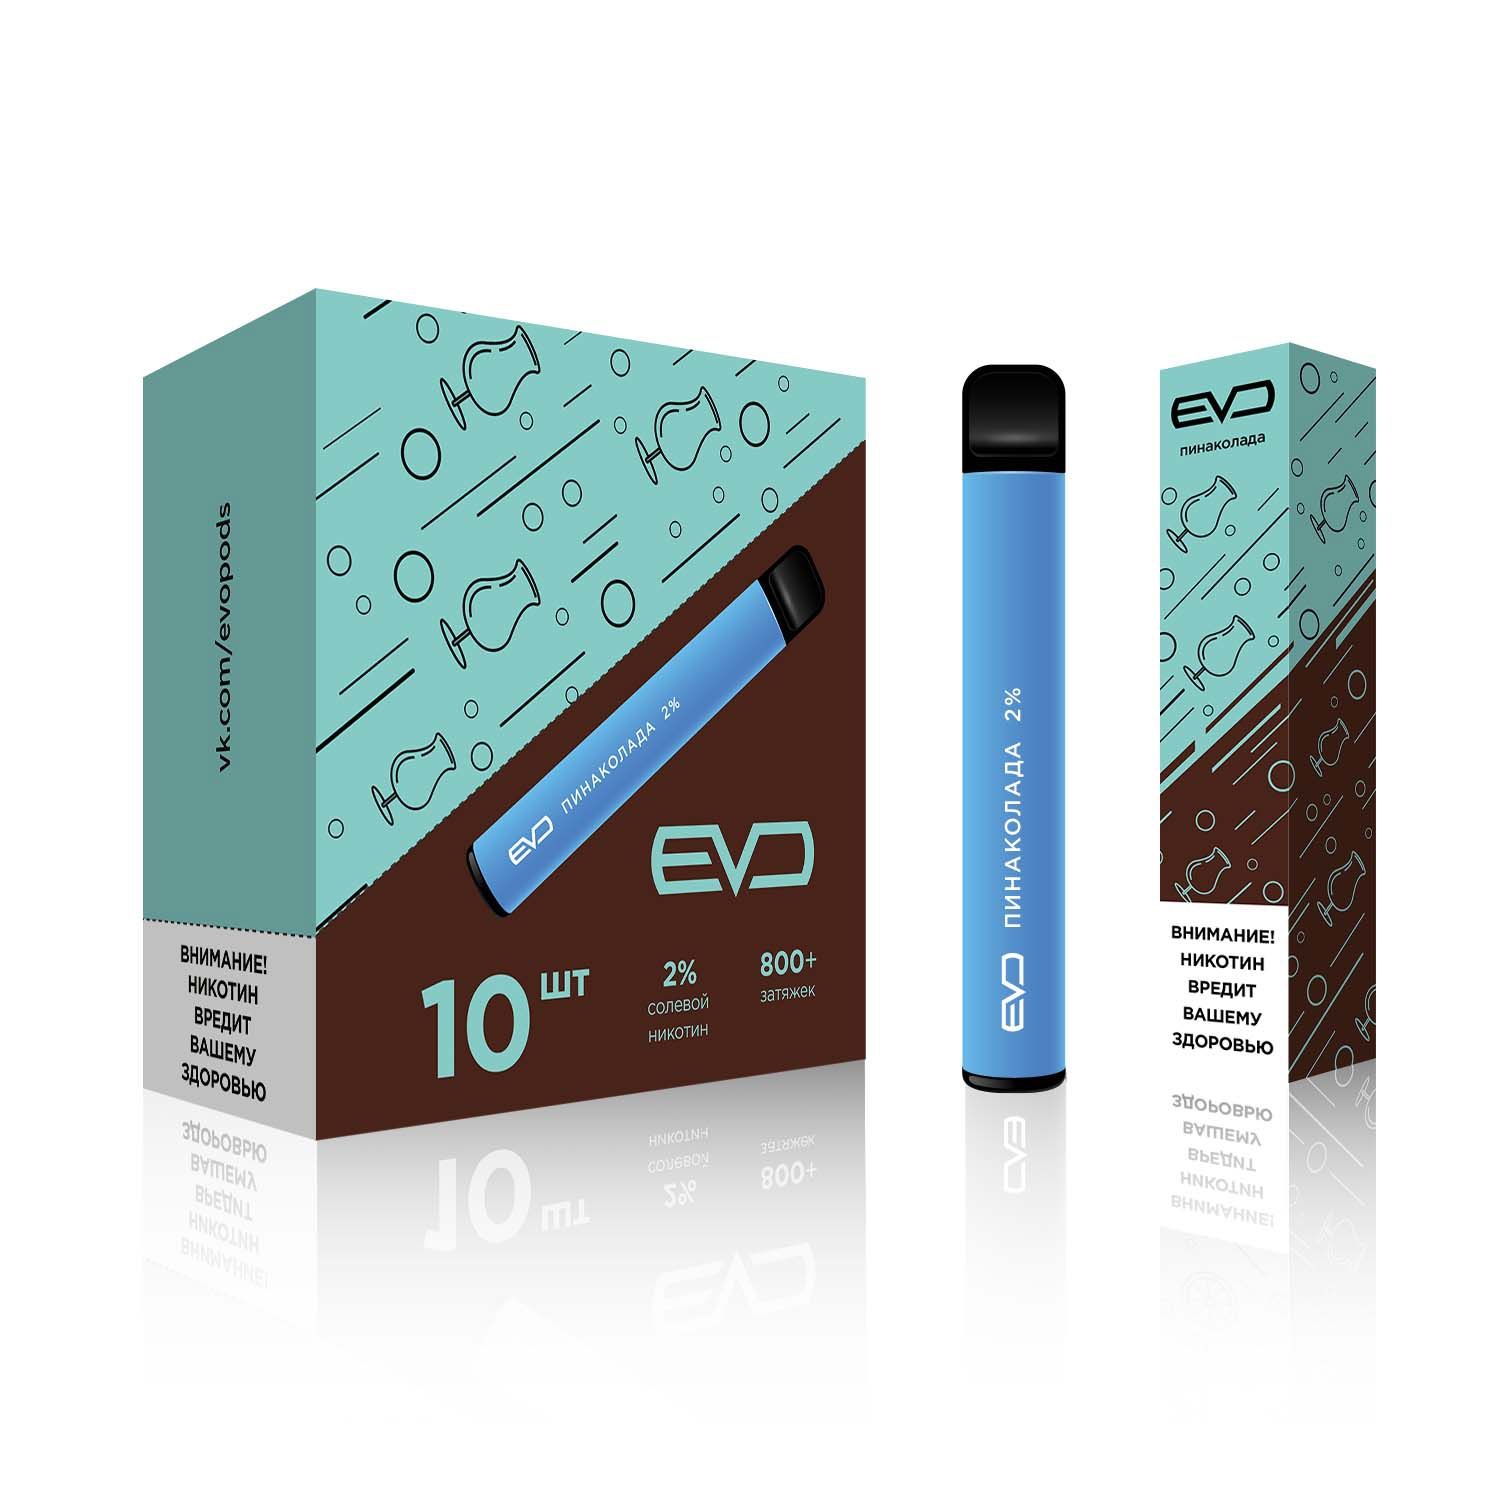 Oxide сигарета купить. Электронная сигарета EVO 800 тяг. Одноразовая сигарета Oxide 800. Электронная сигарета оксид 800 затяжек. EVO электронные сигареты 800 затяжек.